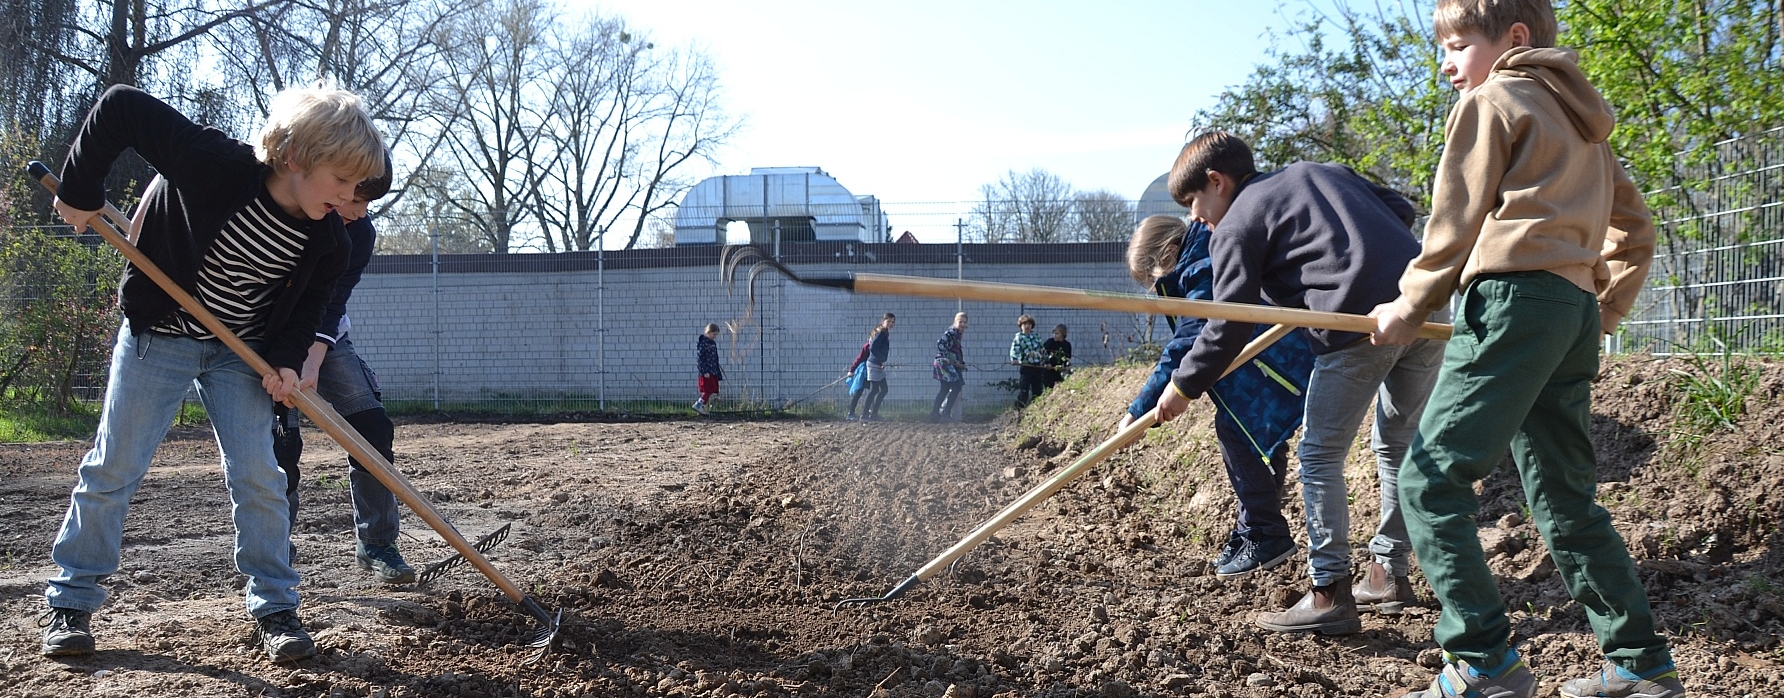 Schülerinnen bereiten Boden für Saatgut vor